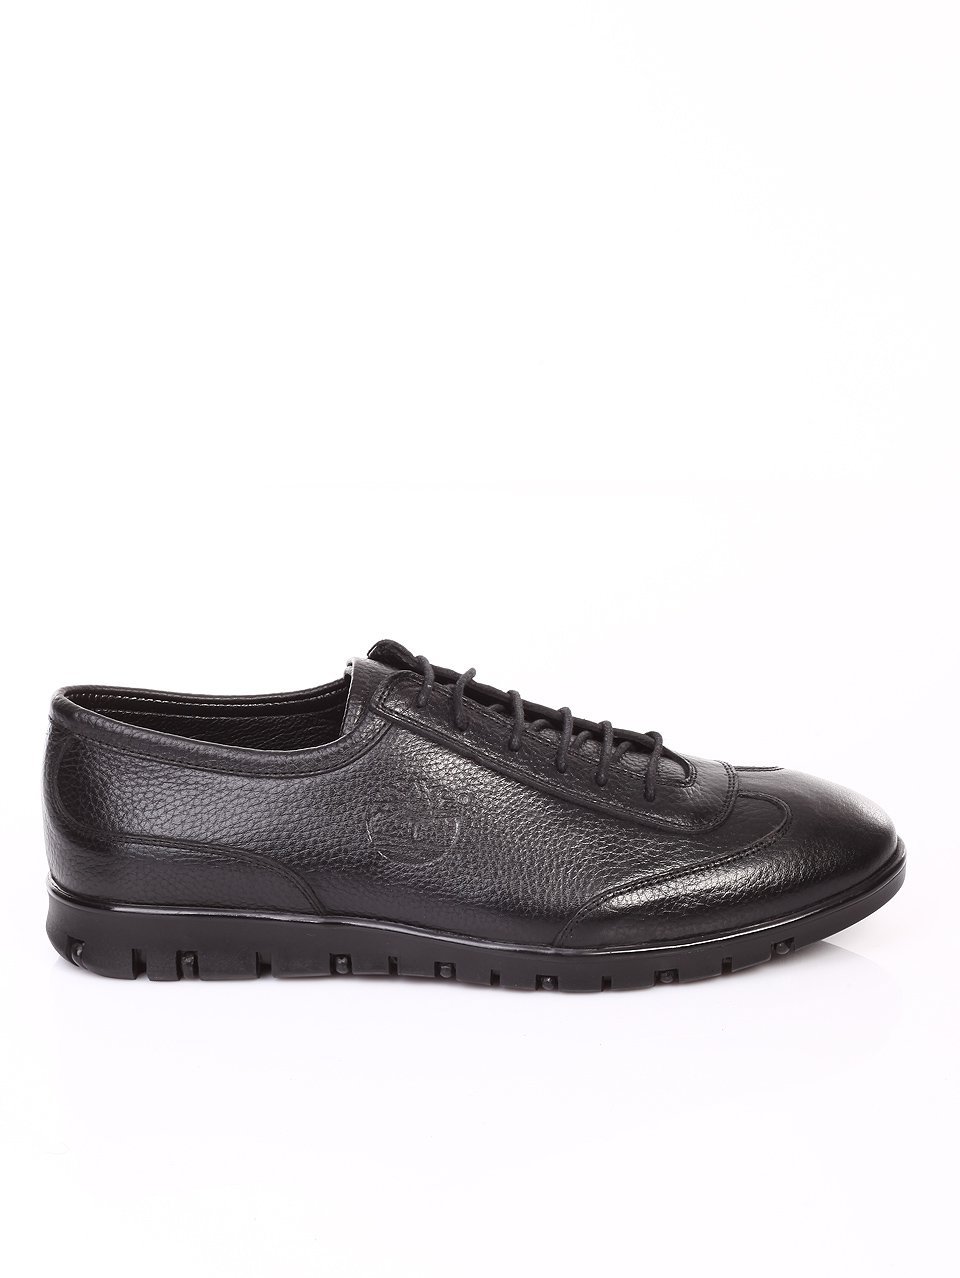 Ежедневни мъжки обувки от естествена кожа в черно 7AT-16897 black